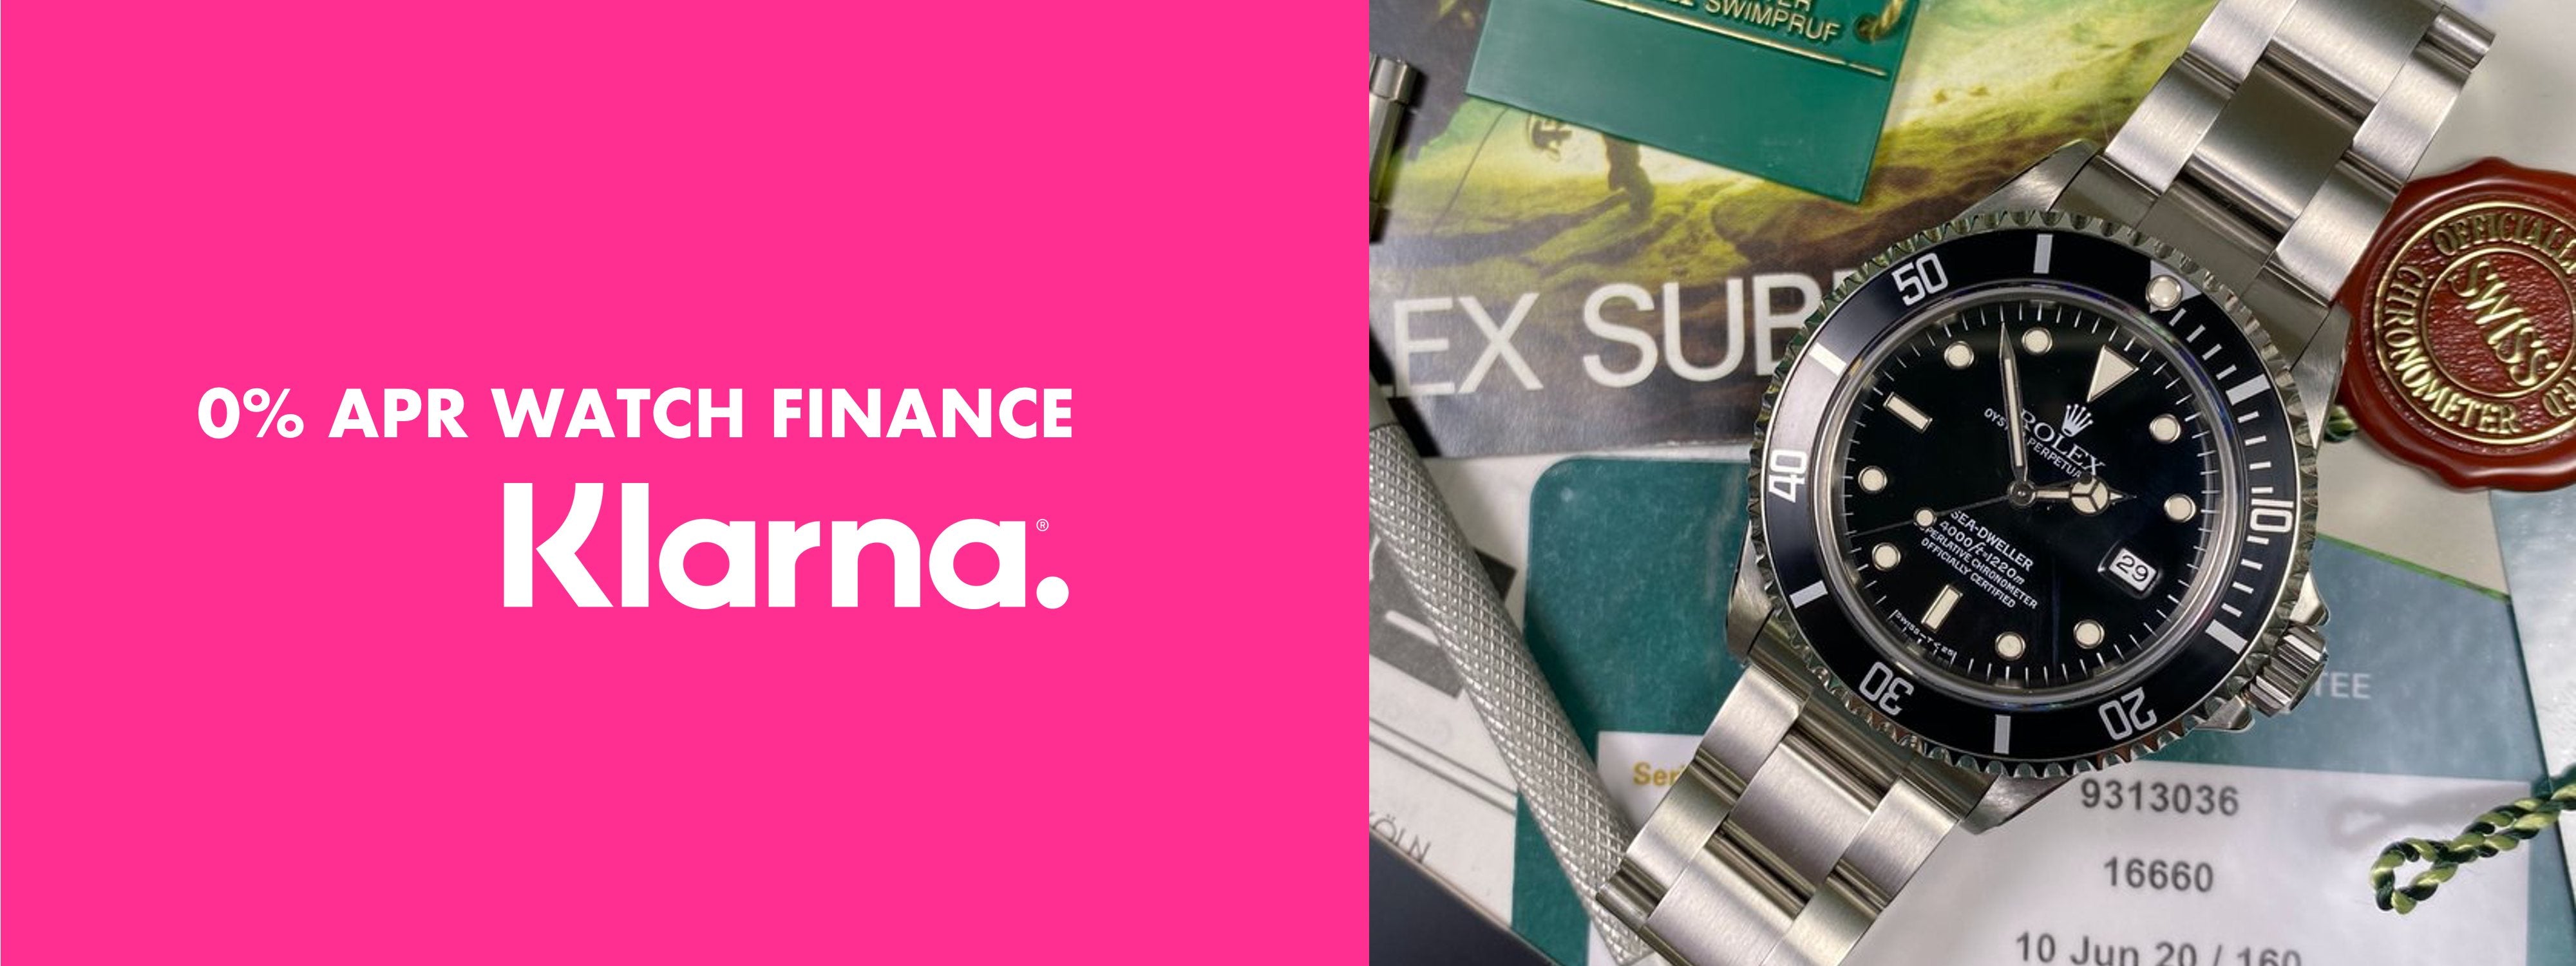 Rolex Finance | Buying a Rolex Watch on 